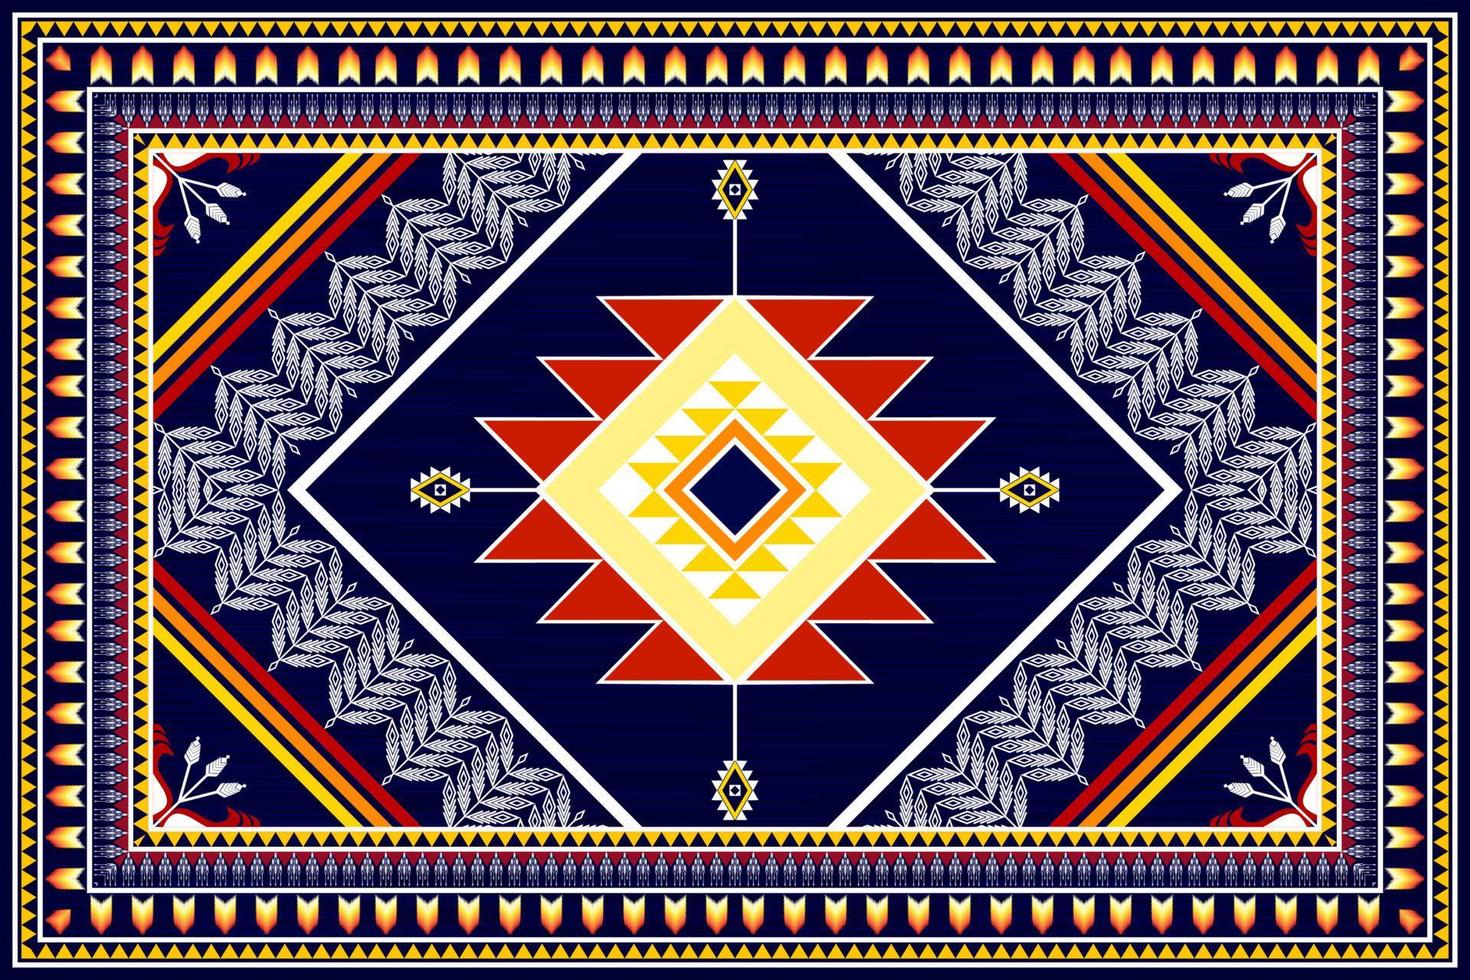 conception de motif ethnique abstrait géométrique. tapis en tissu aztèque ornement mandala ethnique chevron textile décoration papier peint. fond d'illustrations vectorielles de broderie traditionnelle indigène boho tribal vecteur